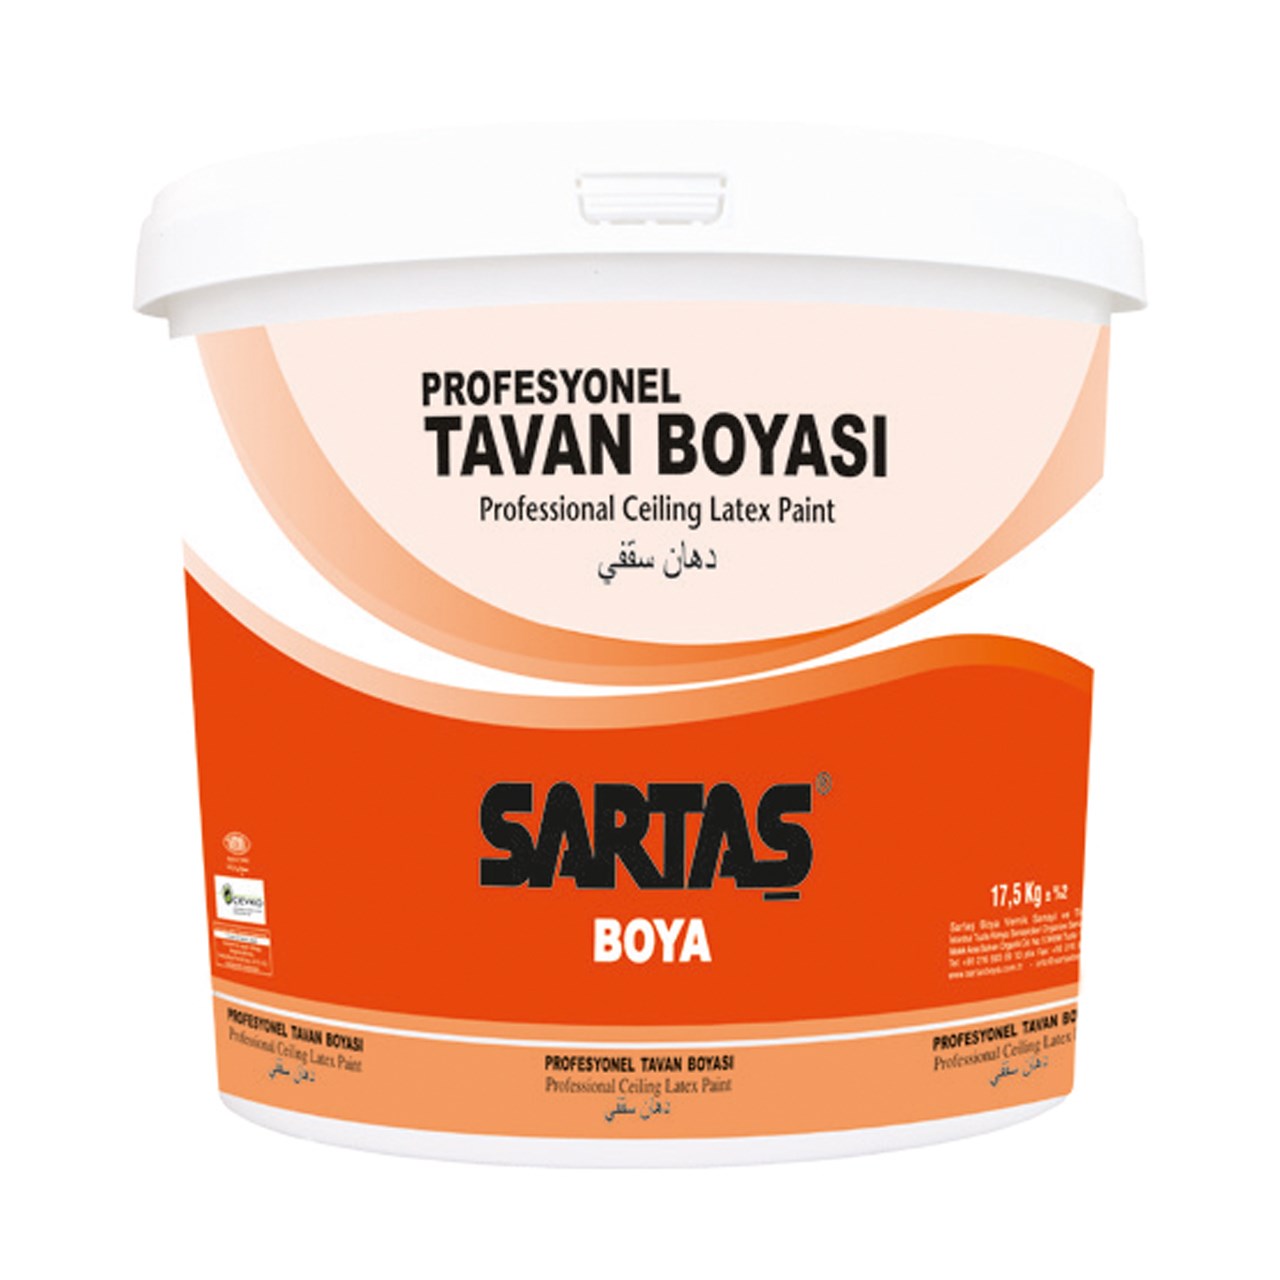 رنگ اکریلیک پایه آب سارتاش مدل سقفی مات Tavan Boyasi کد SOP 106 وزن 3.5 کیلوگرم